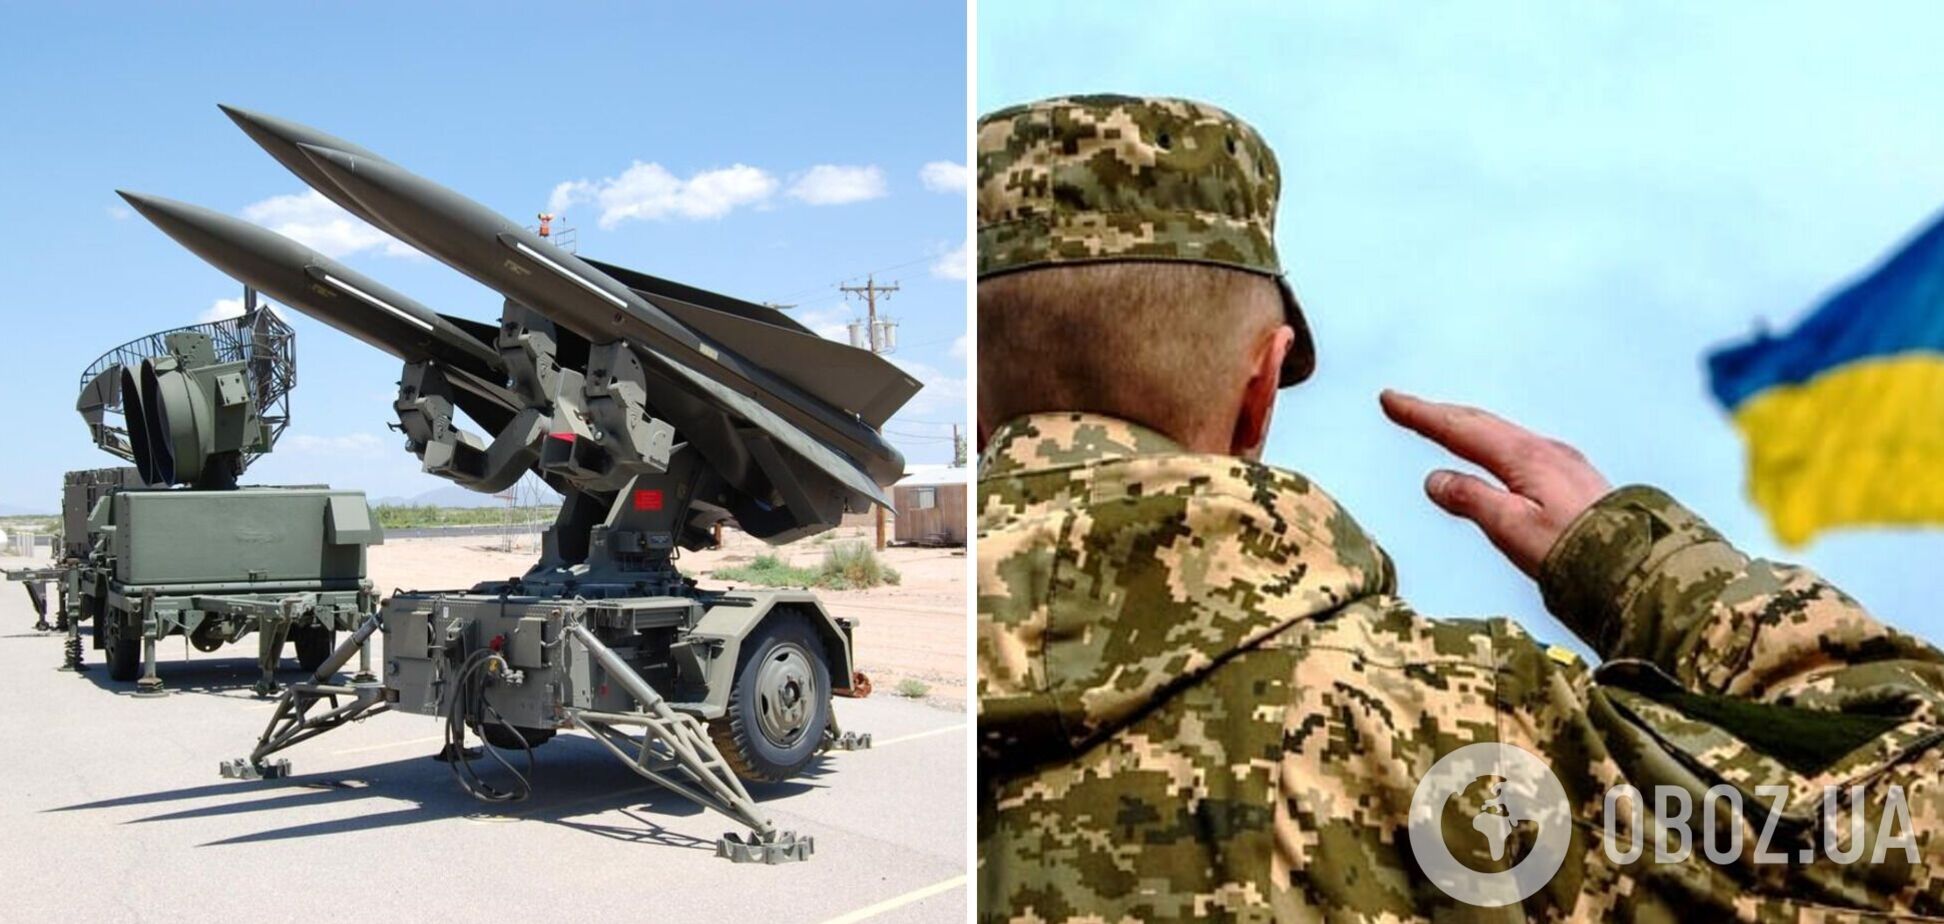 'Ястреб заступает на боевое дежурство': в ВСУ анонсировали усиление украинской ПВО американским ЗРК Hawk